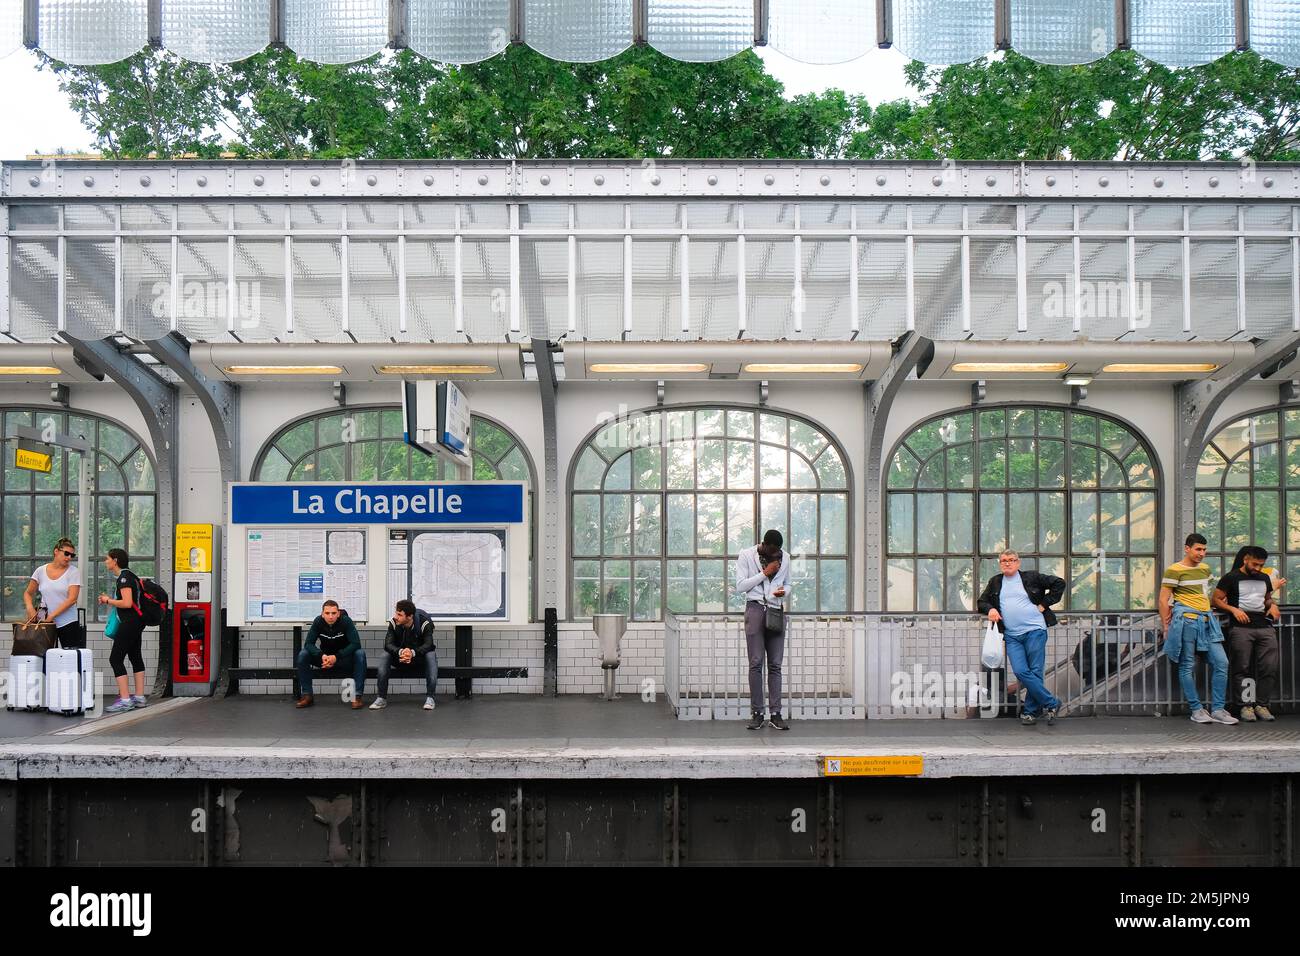 Paris, France - les gens attendent le prochain train à l'intérieur de la station de métro la Chapelle. Les navetteurs attendent sur la plate-forme. Intérieur en vitraux transparents. Banque D'Images